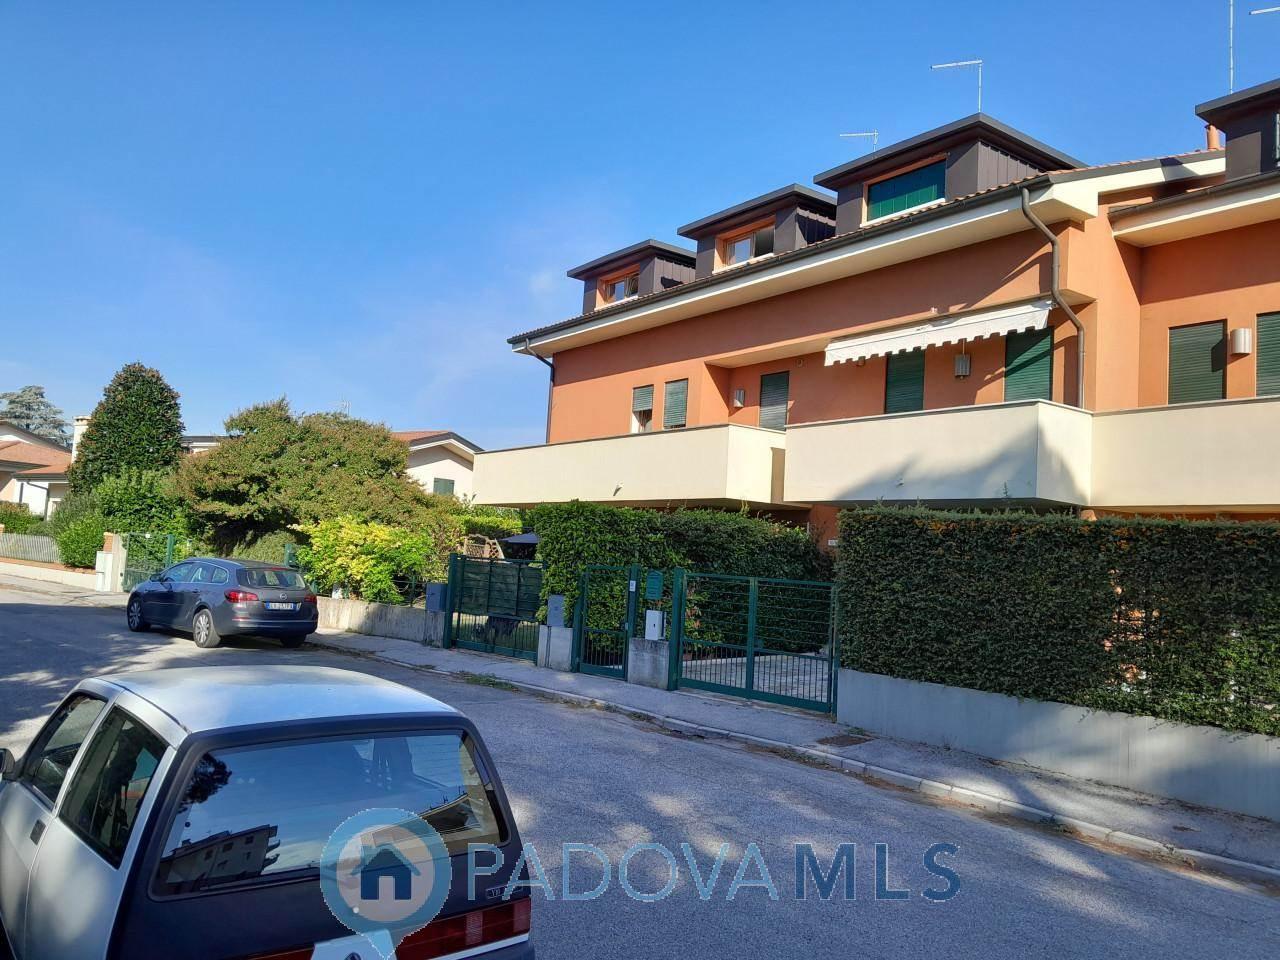 Villa a schiera in vendita a Selvazzano Dentro